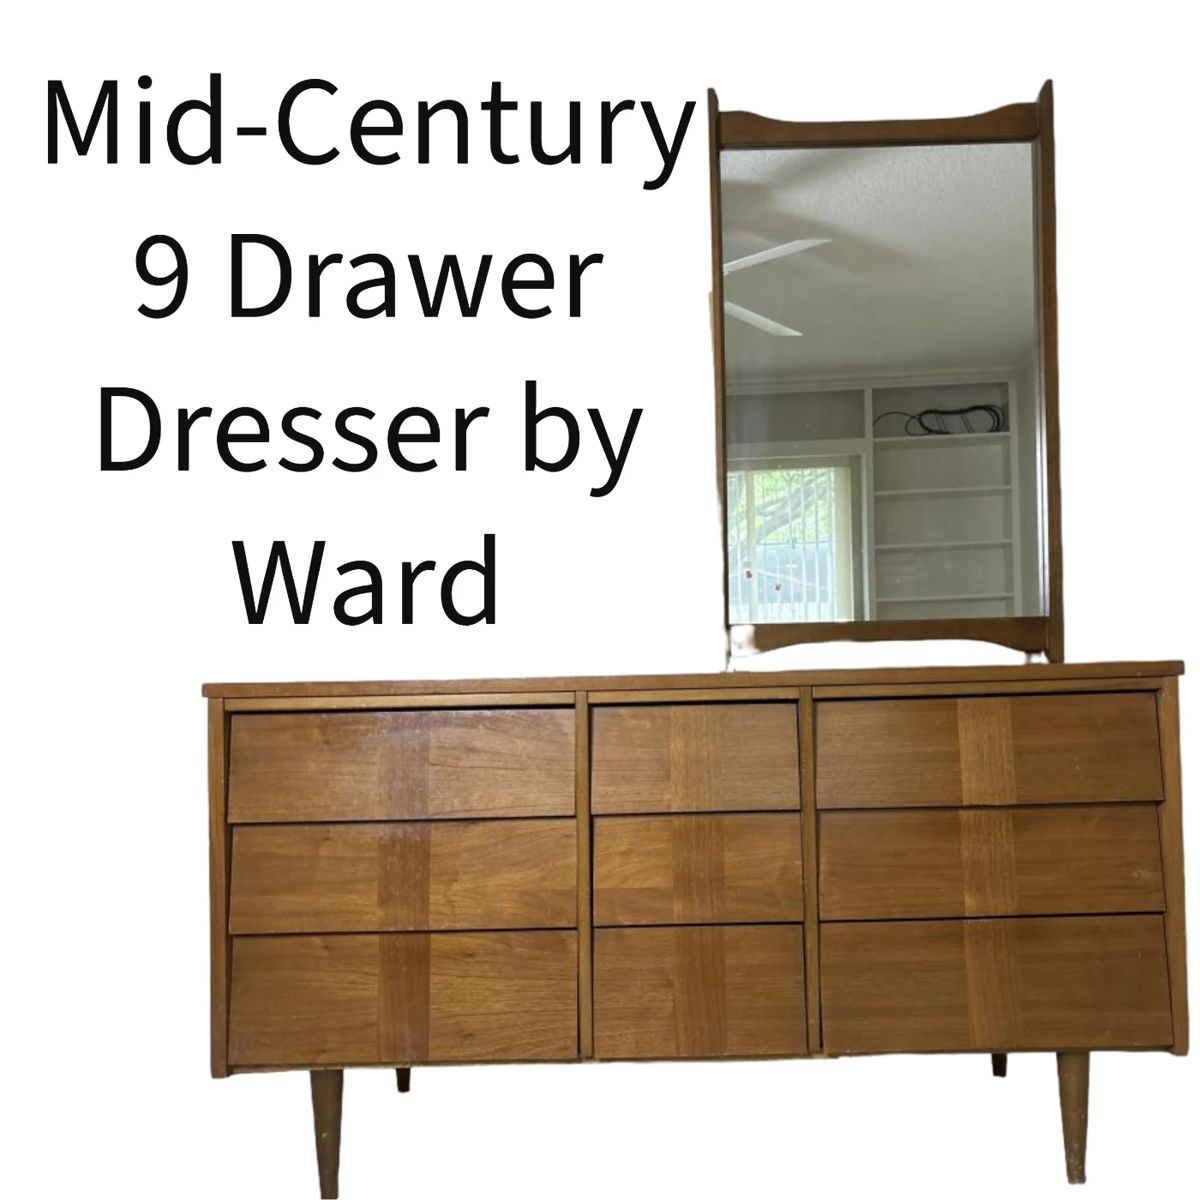 Mid-Century Modern 9 drawer dresser by Ward